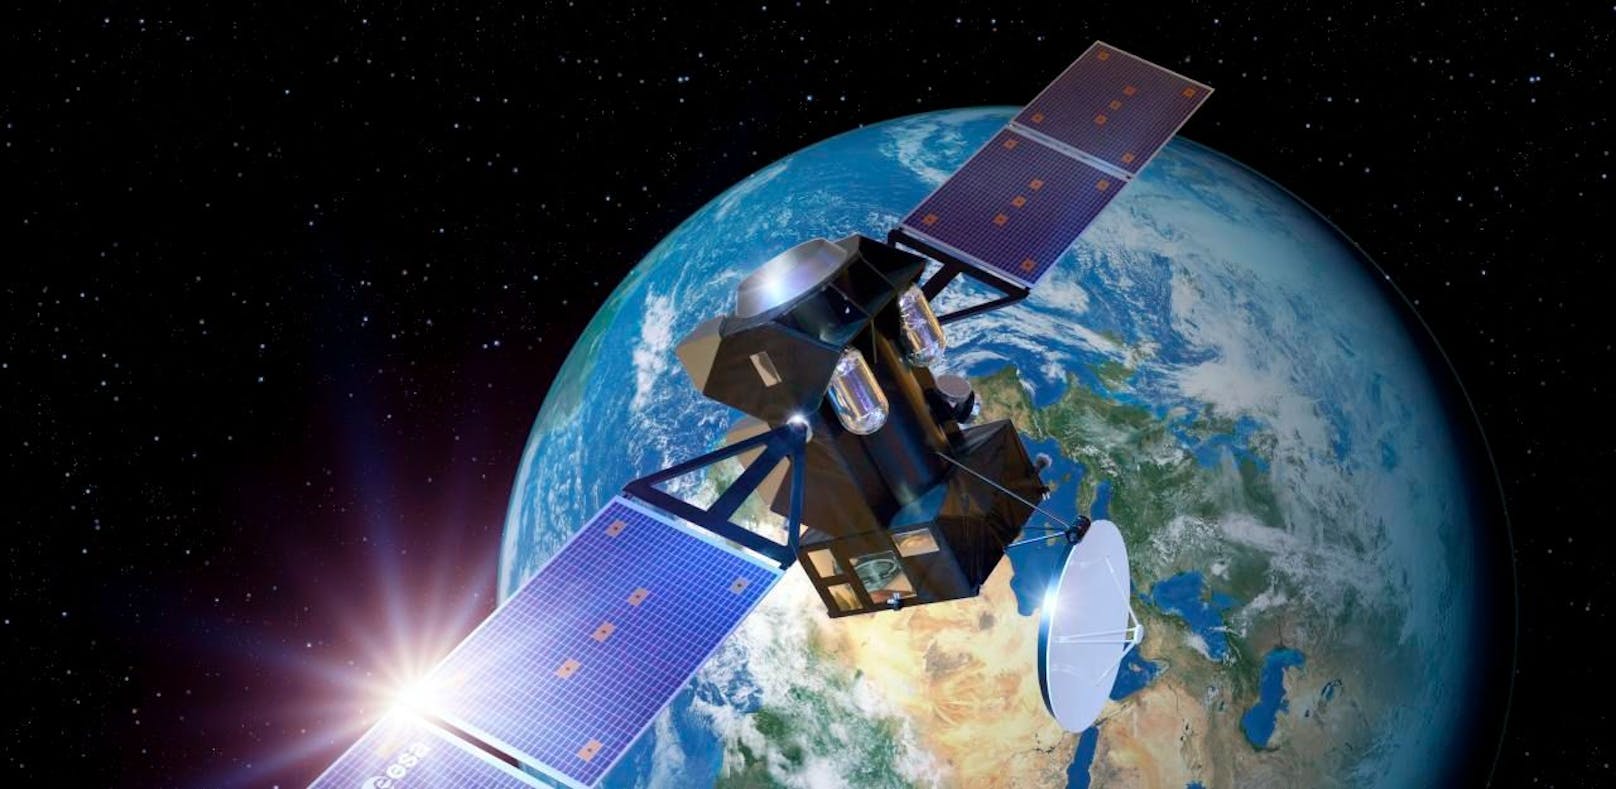 Über 3.000 Satelliten umkreisen die Erde. Einige davon sind möglicherweise Waffen.